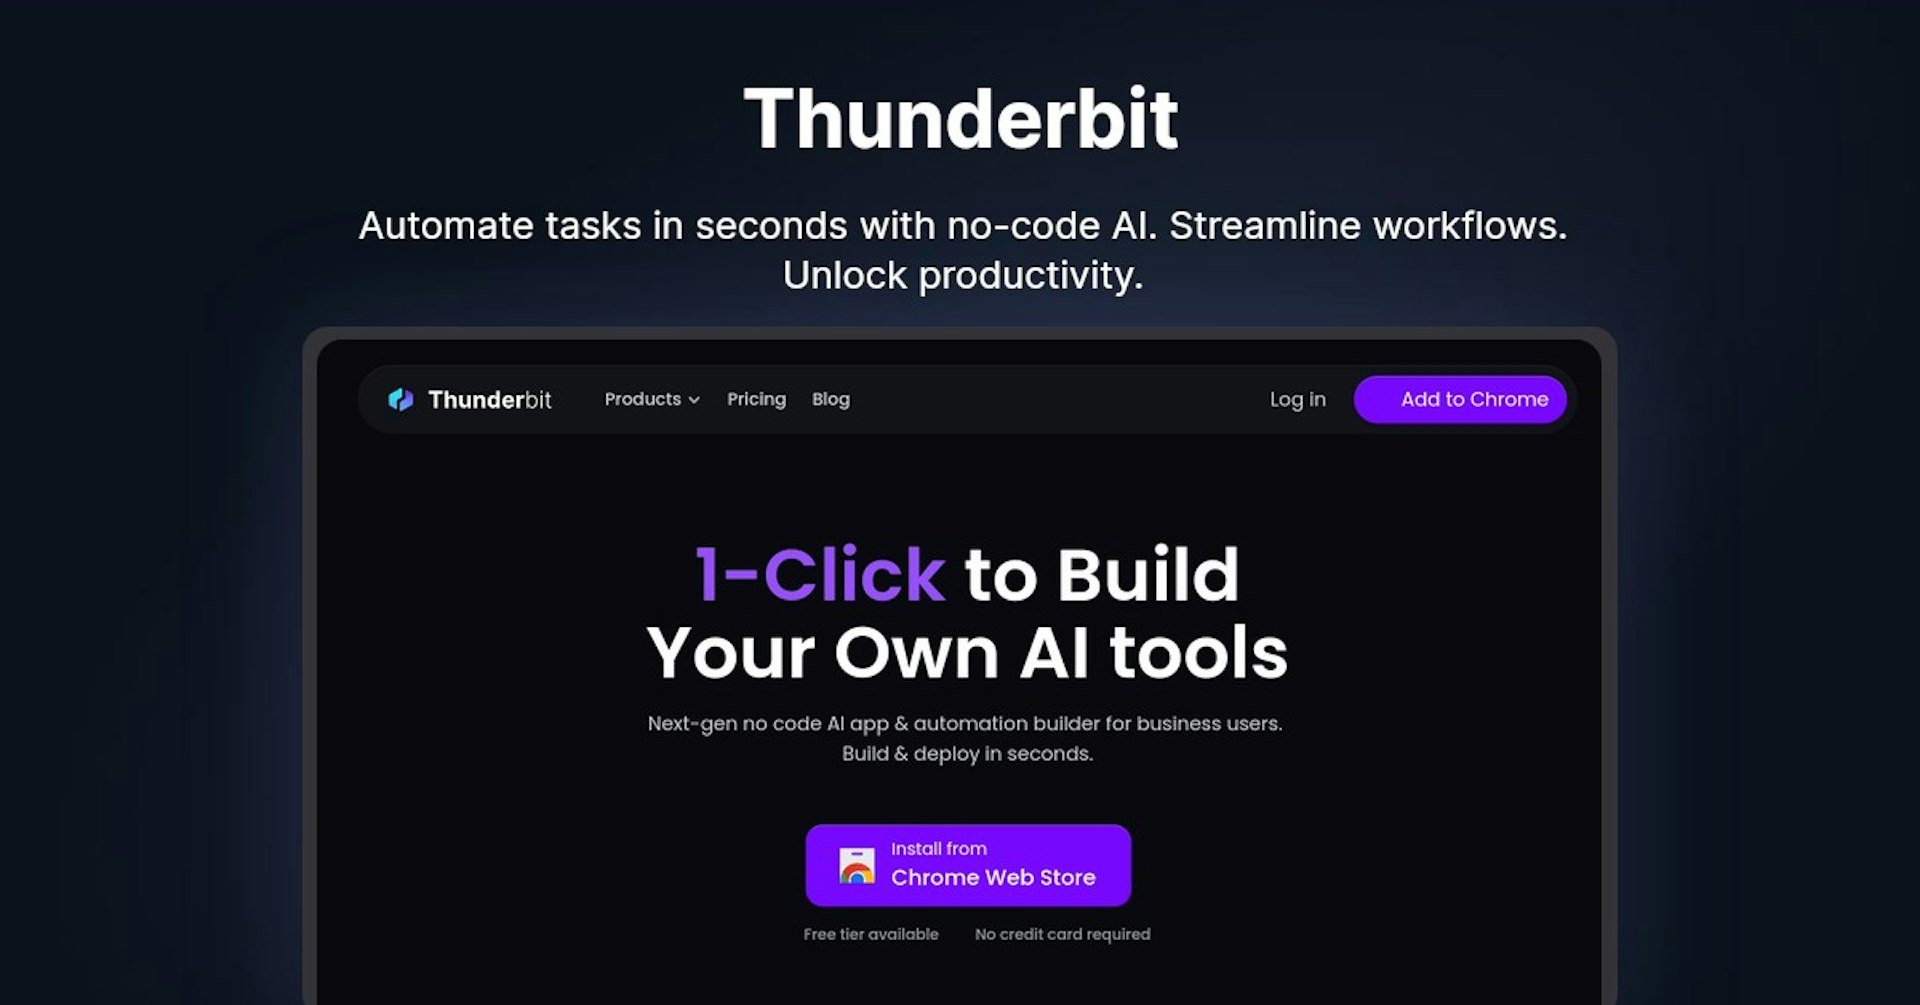 Thunderbit